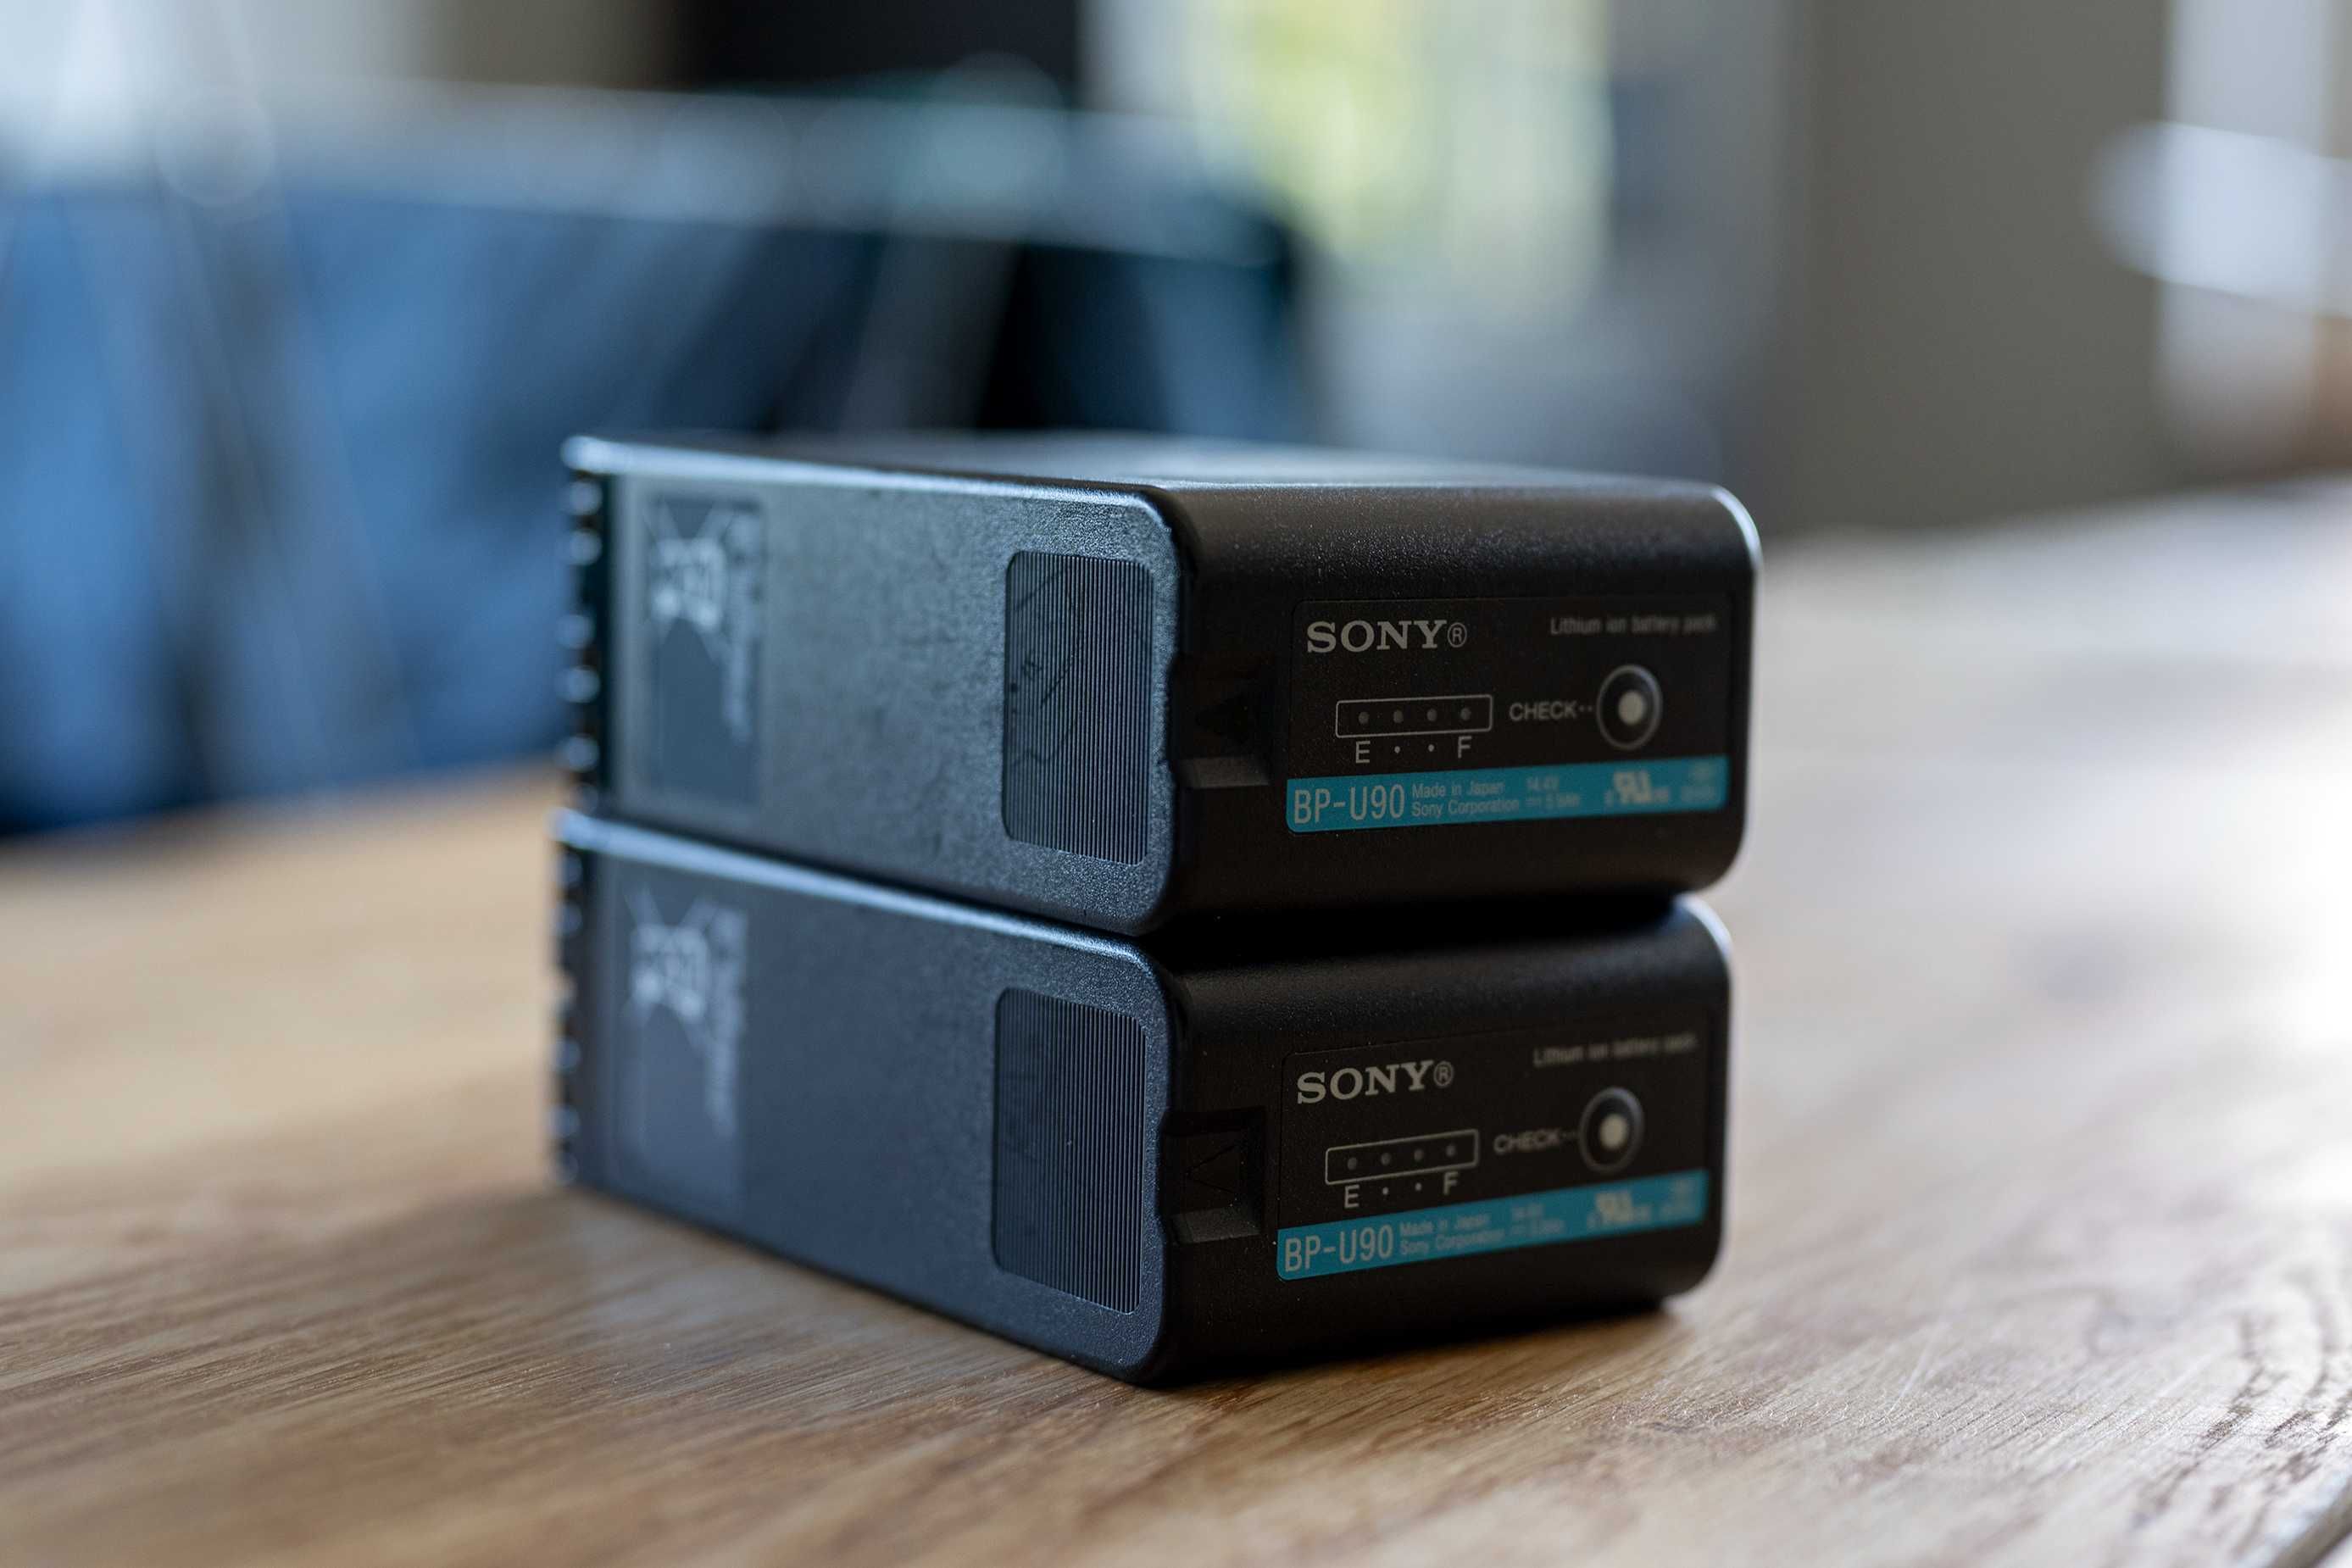 2x bateria Sony BP-U90